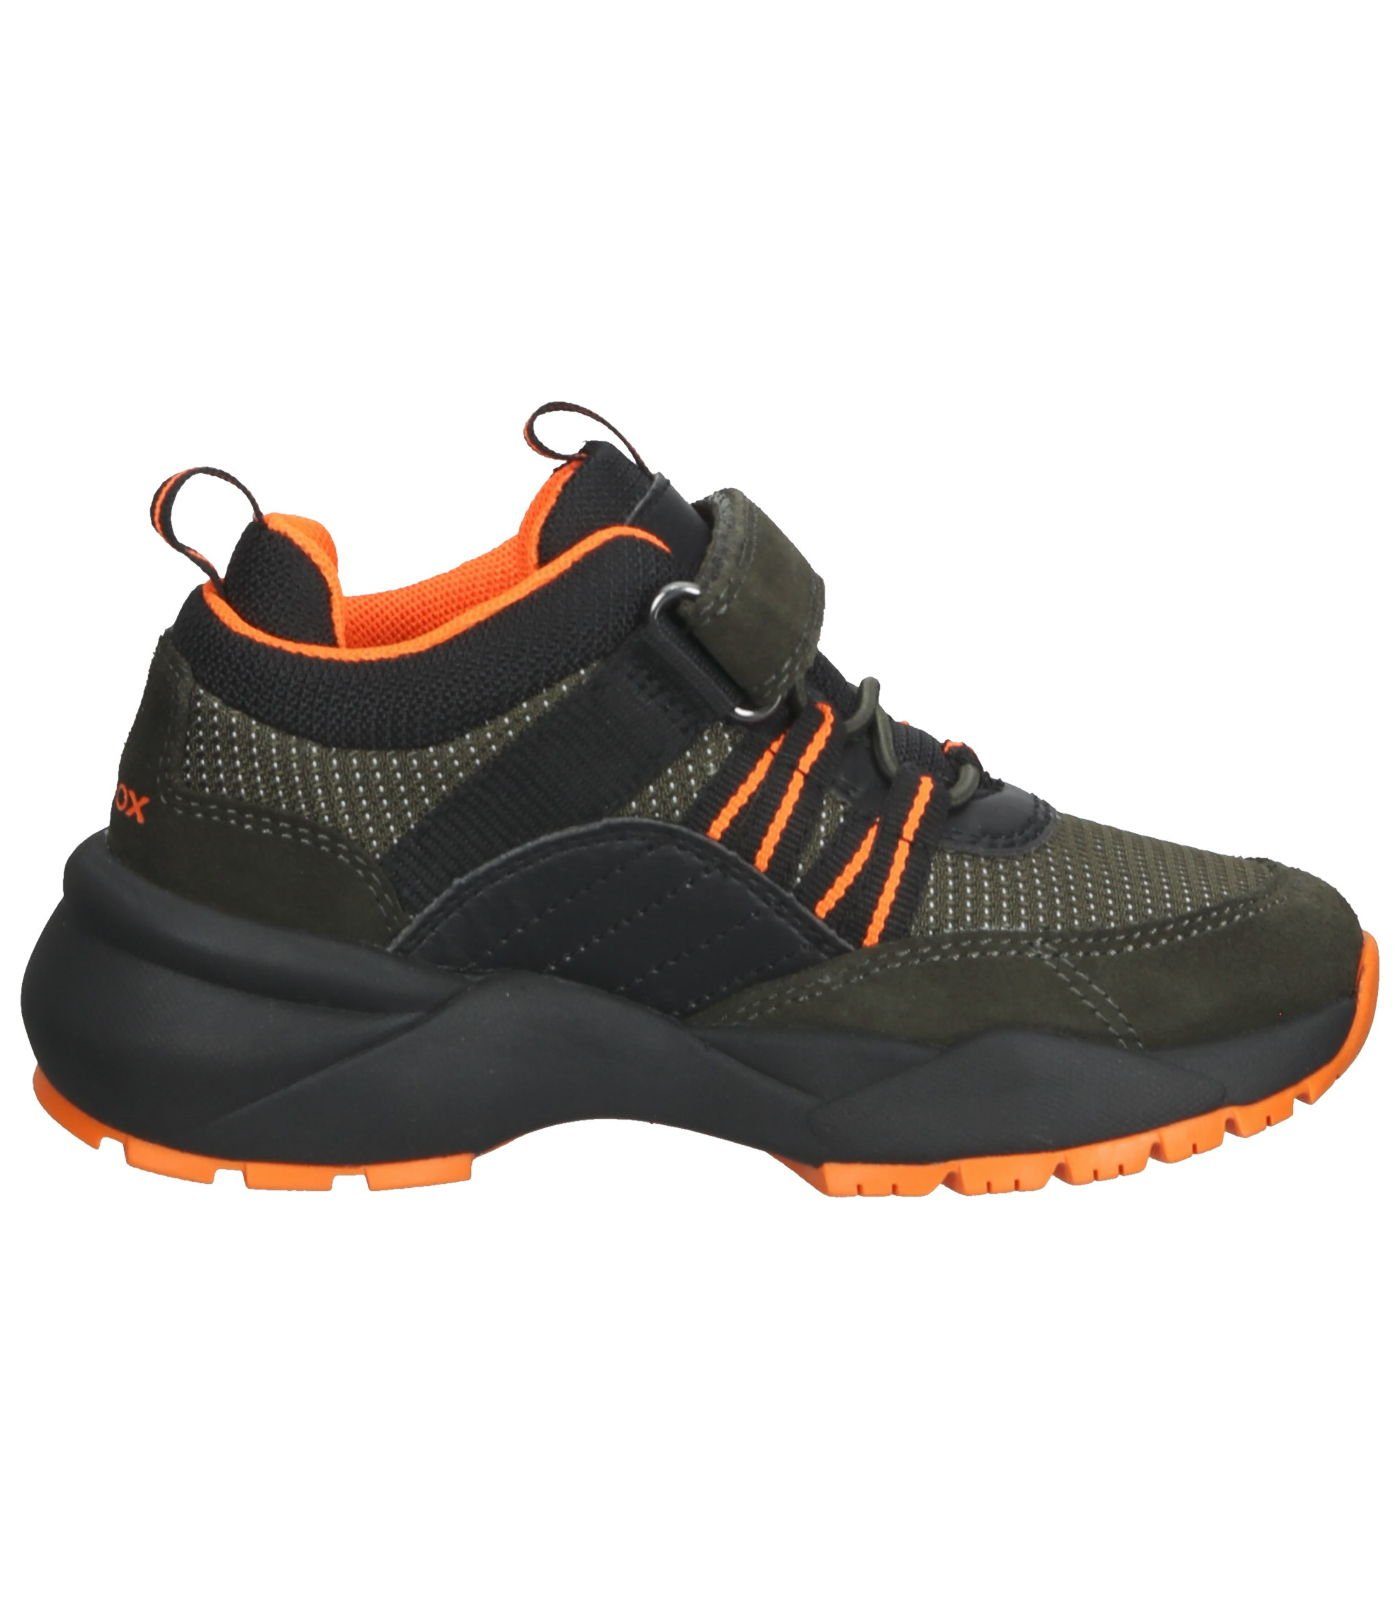 Geox Sneaker Leder/Textil Military Sneaker